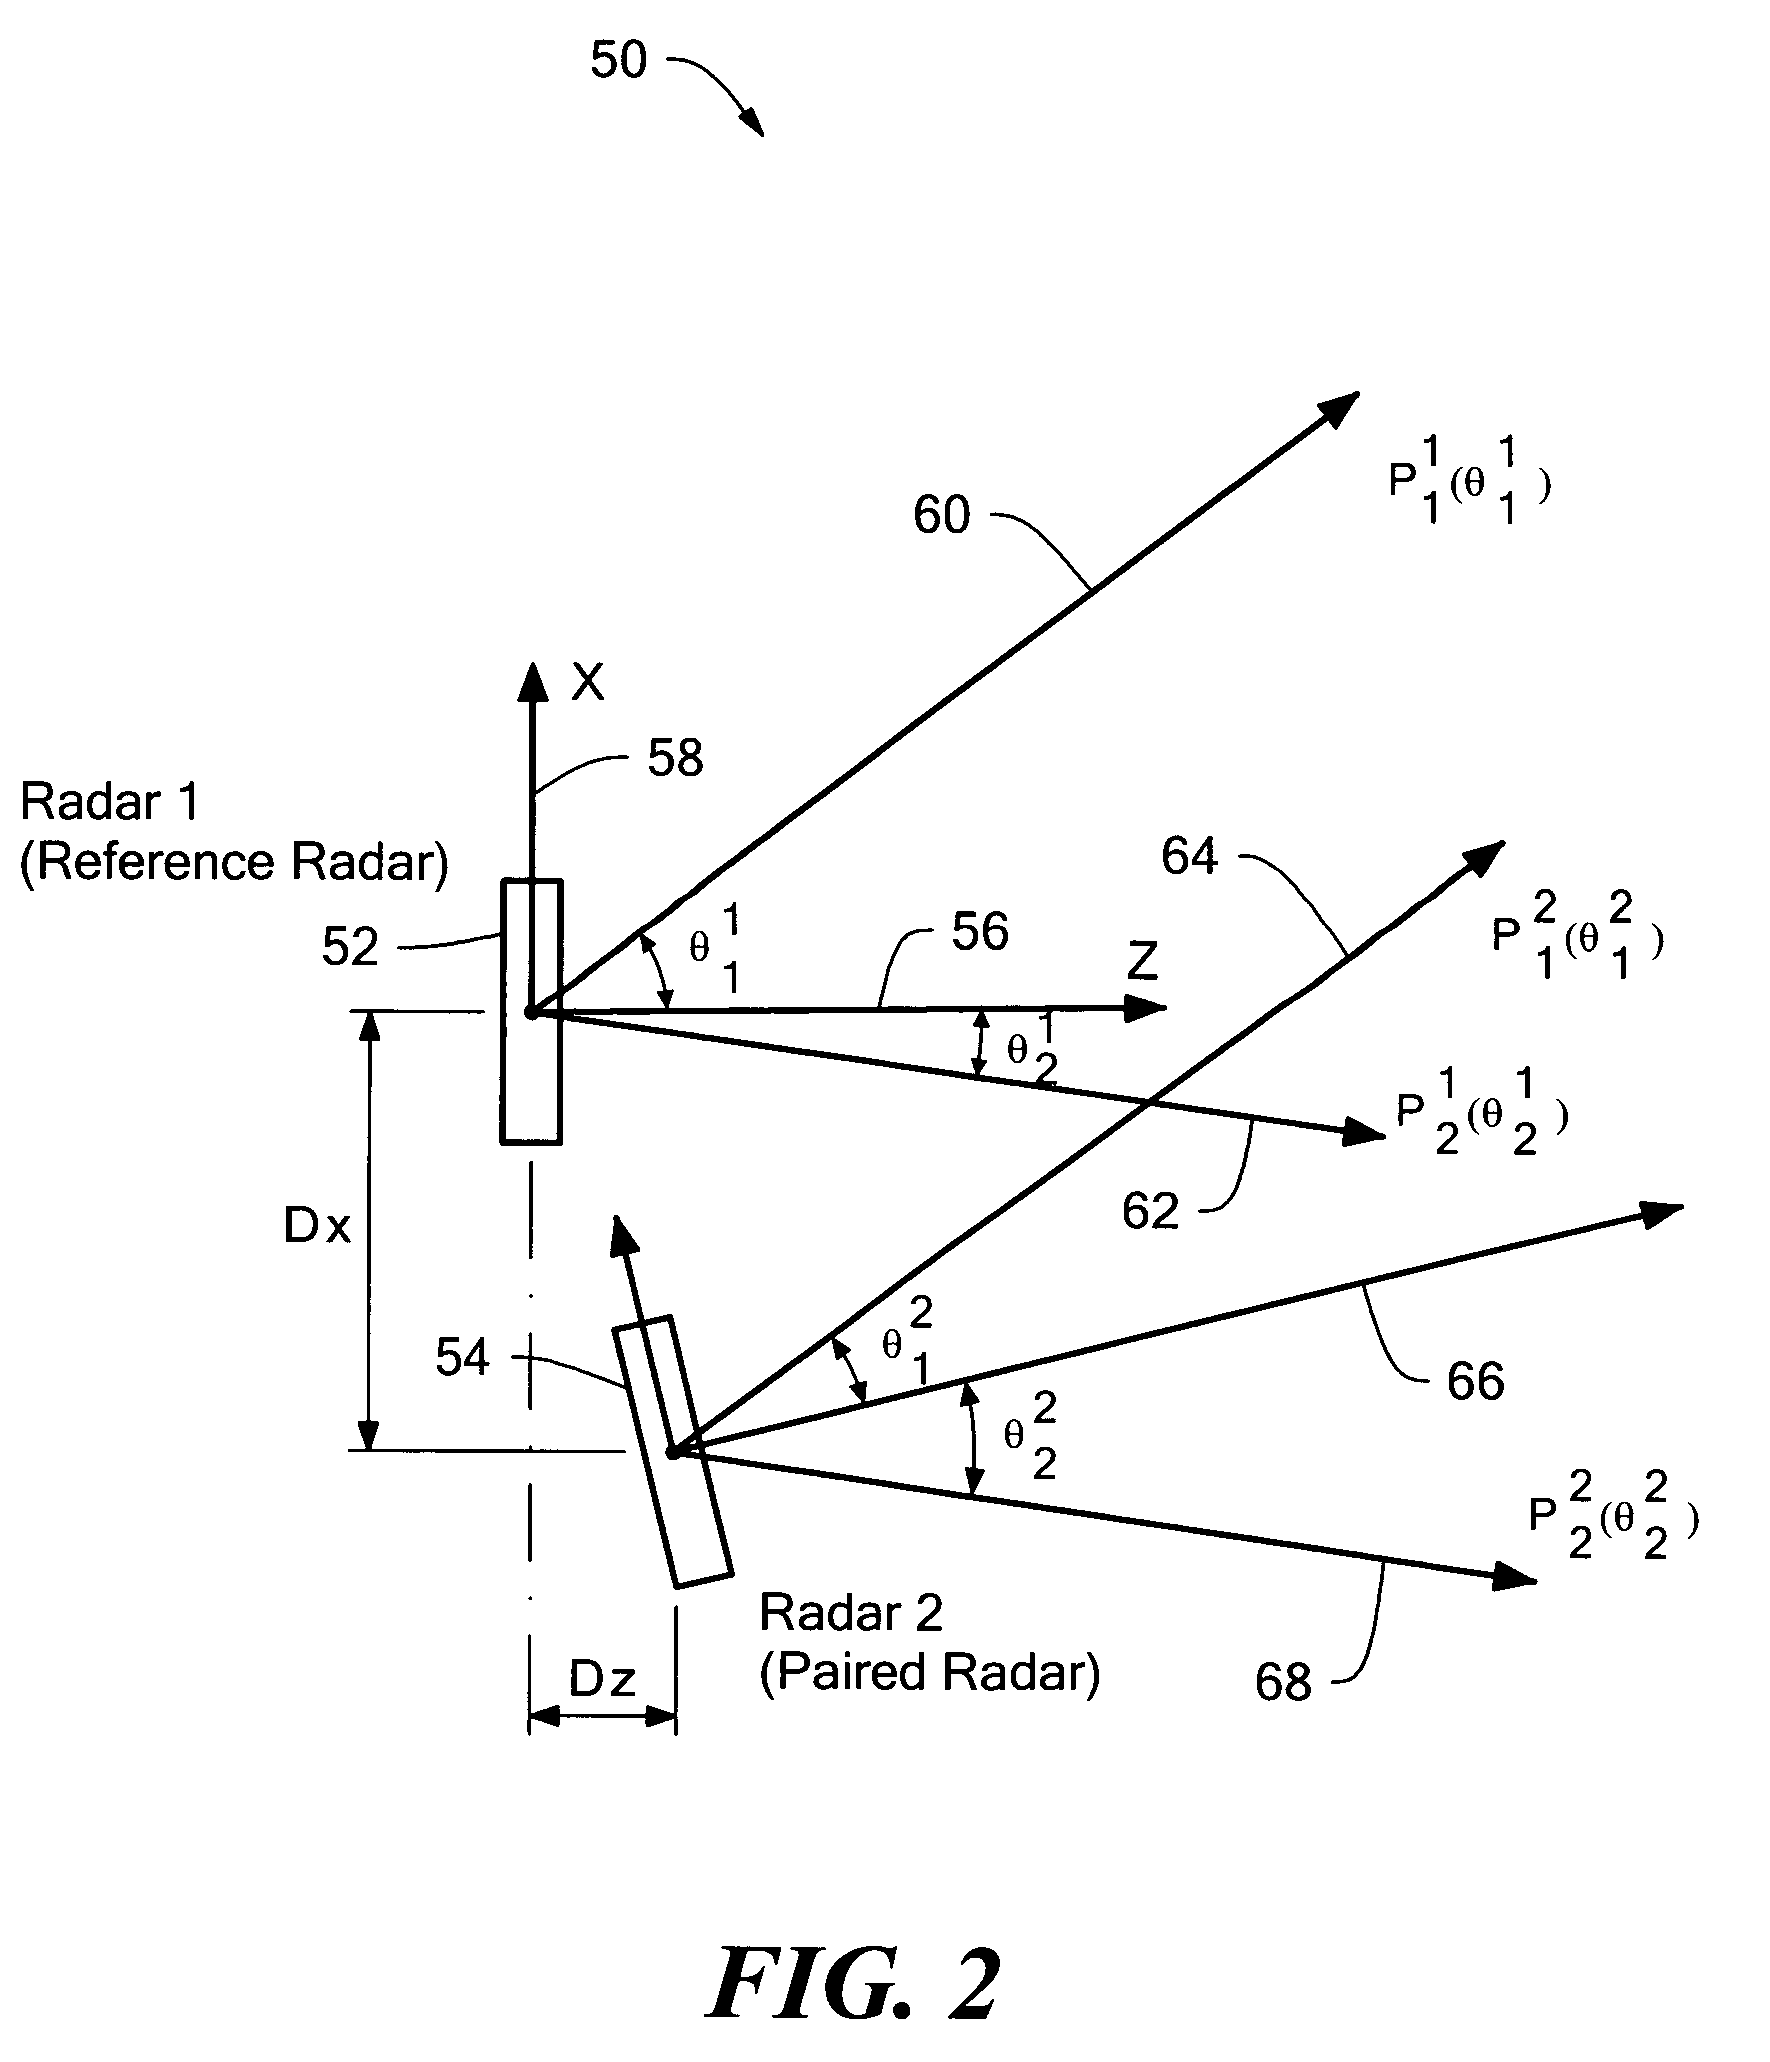 System and technique for calibrating radar arrays